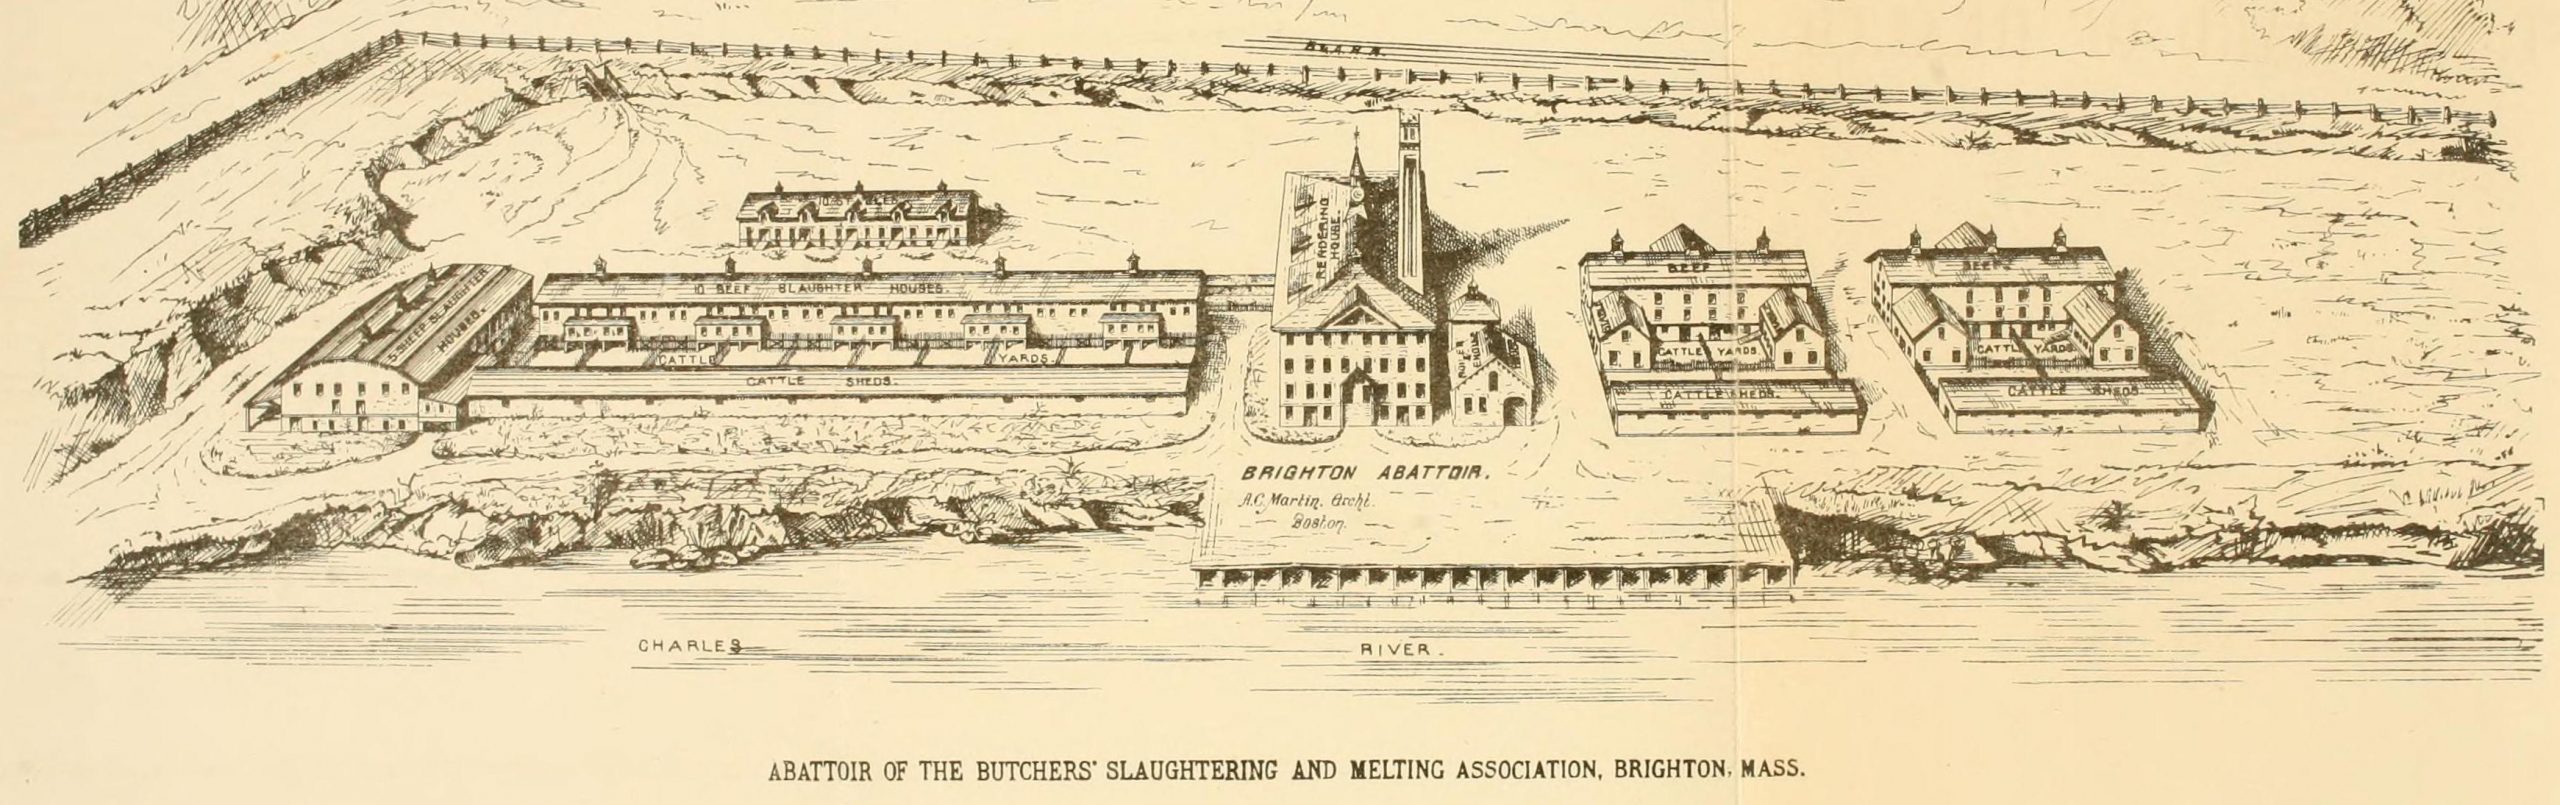 The Brighton abattoir complex